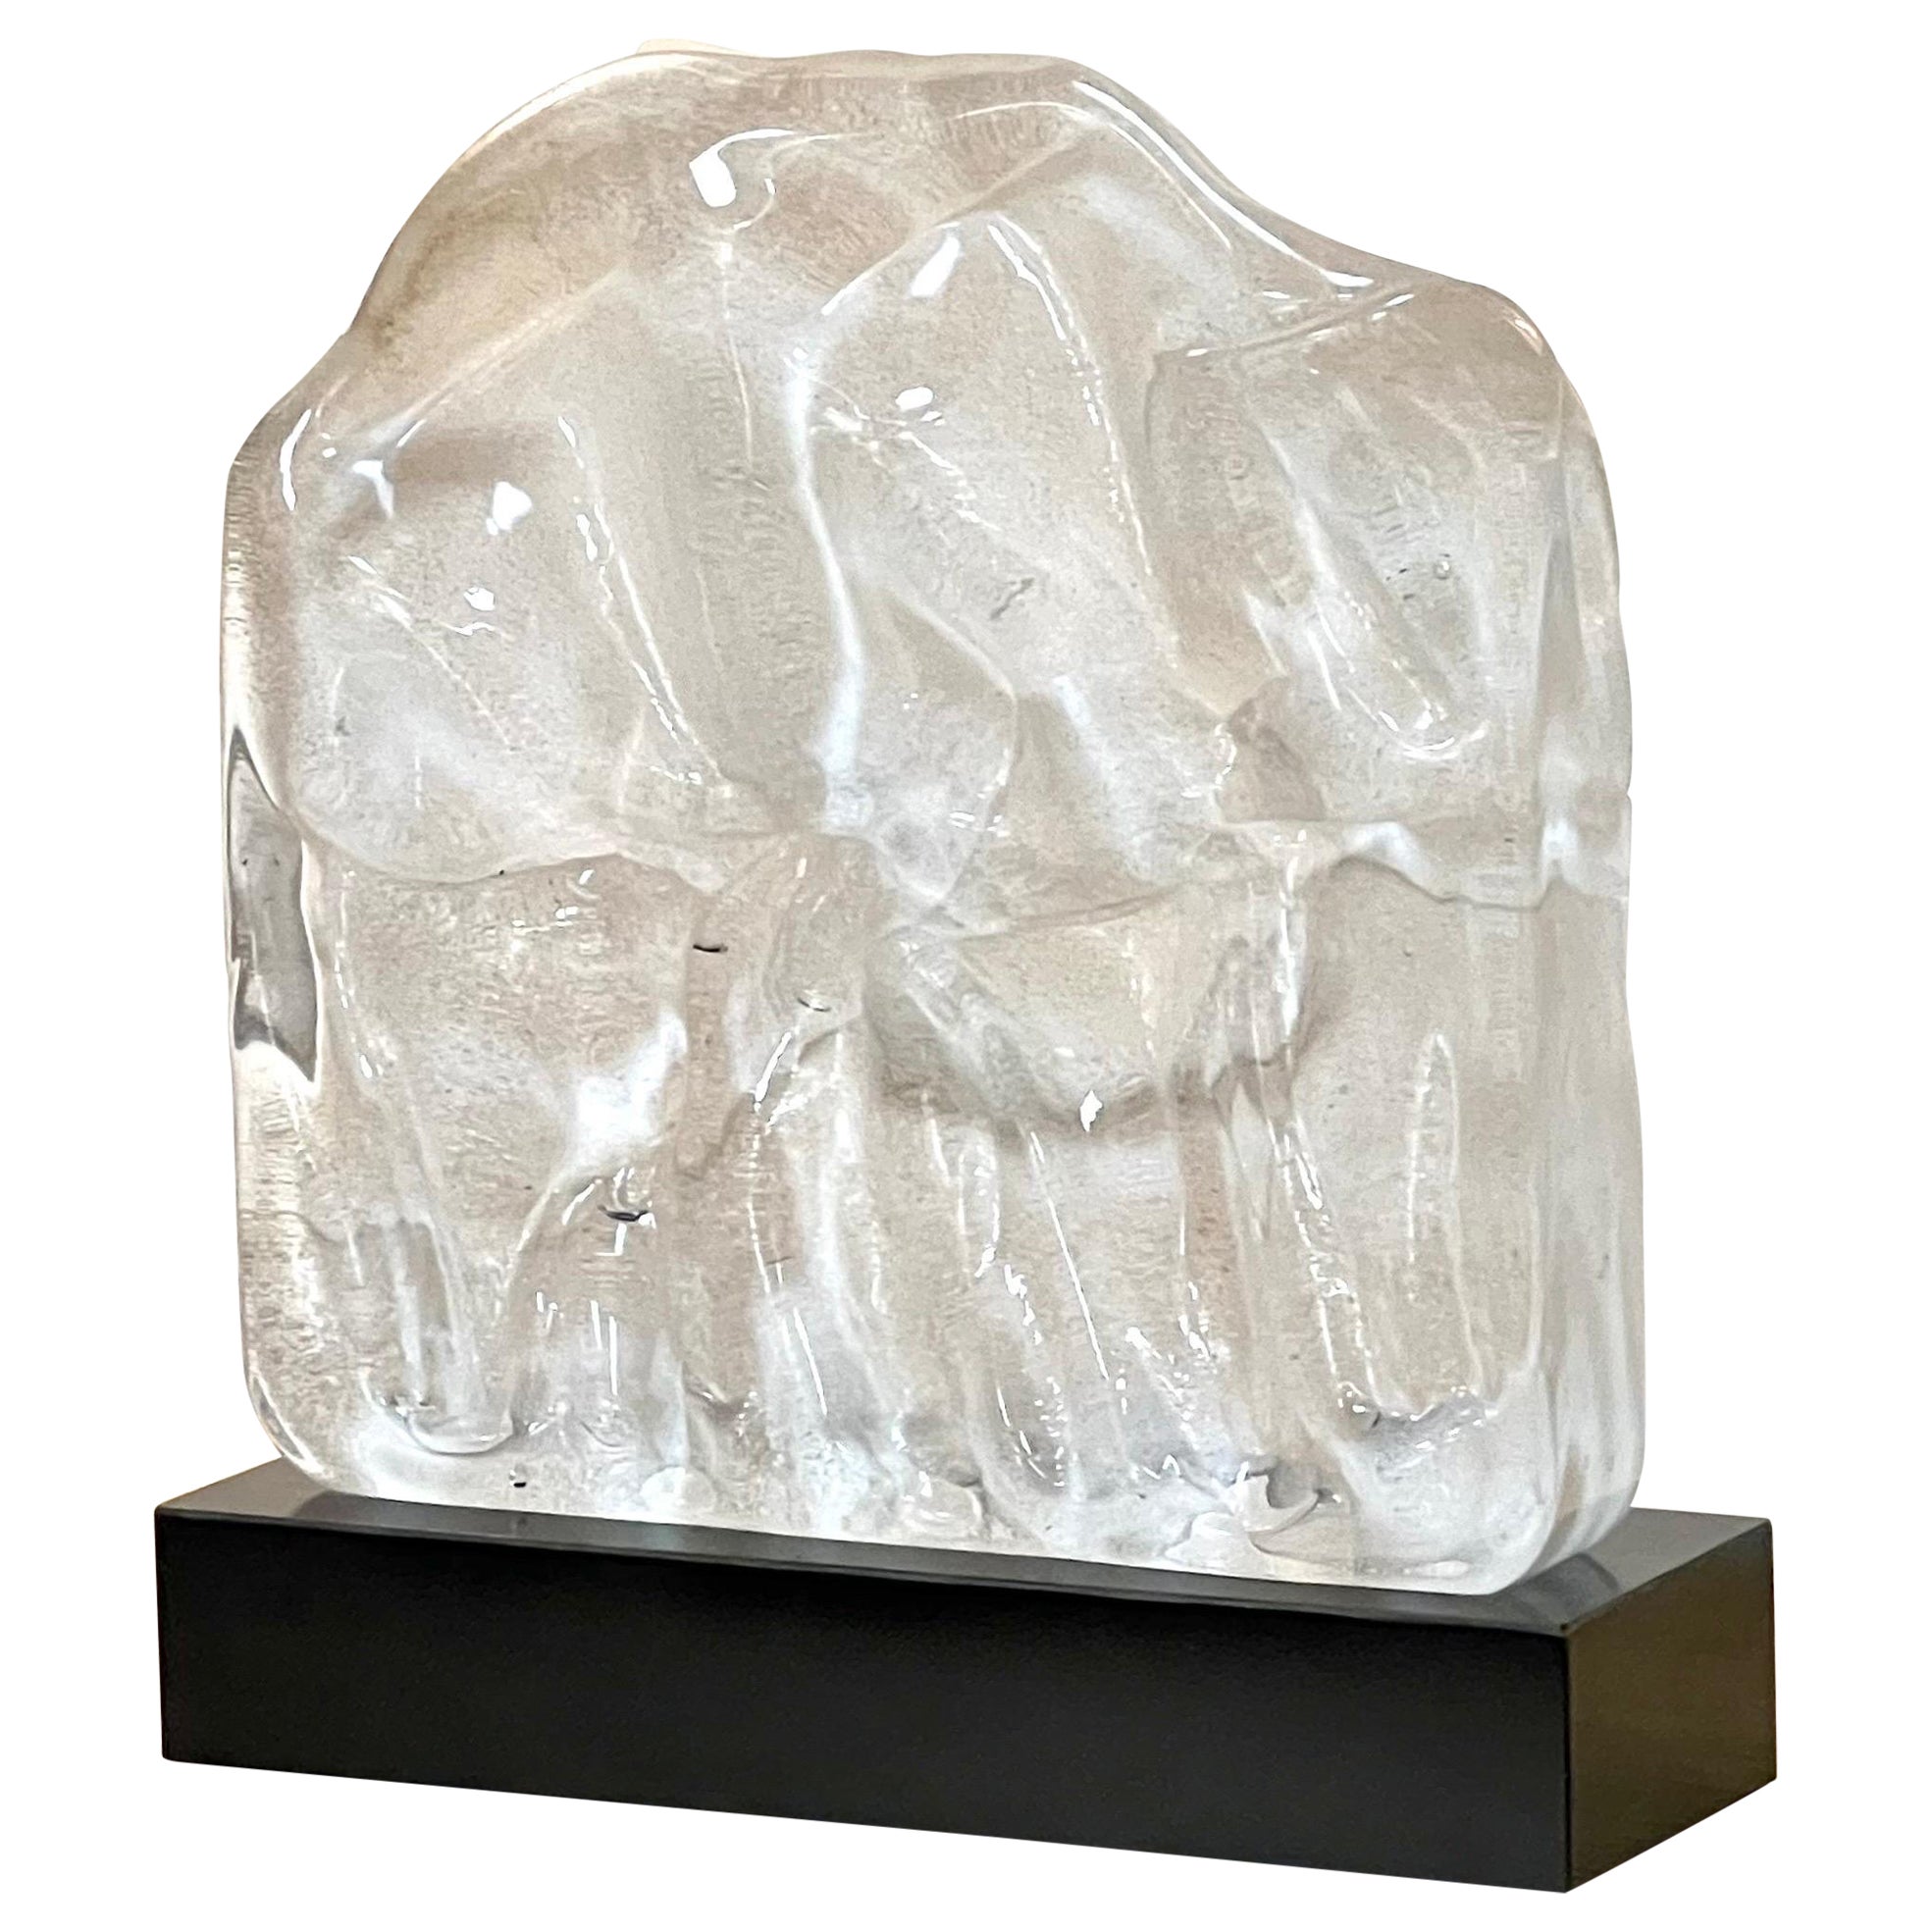 Michael Lax Rare Modernist Glass Sculpture, 1976